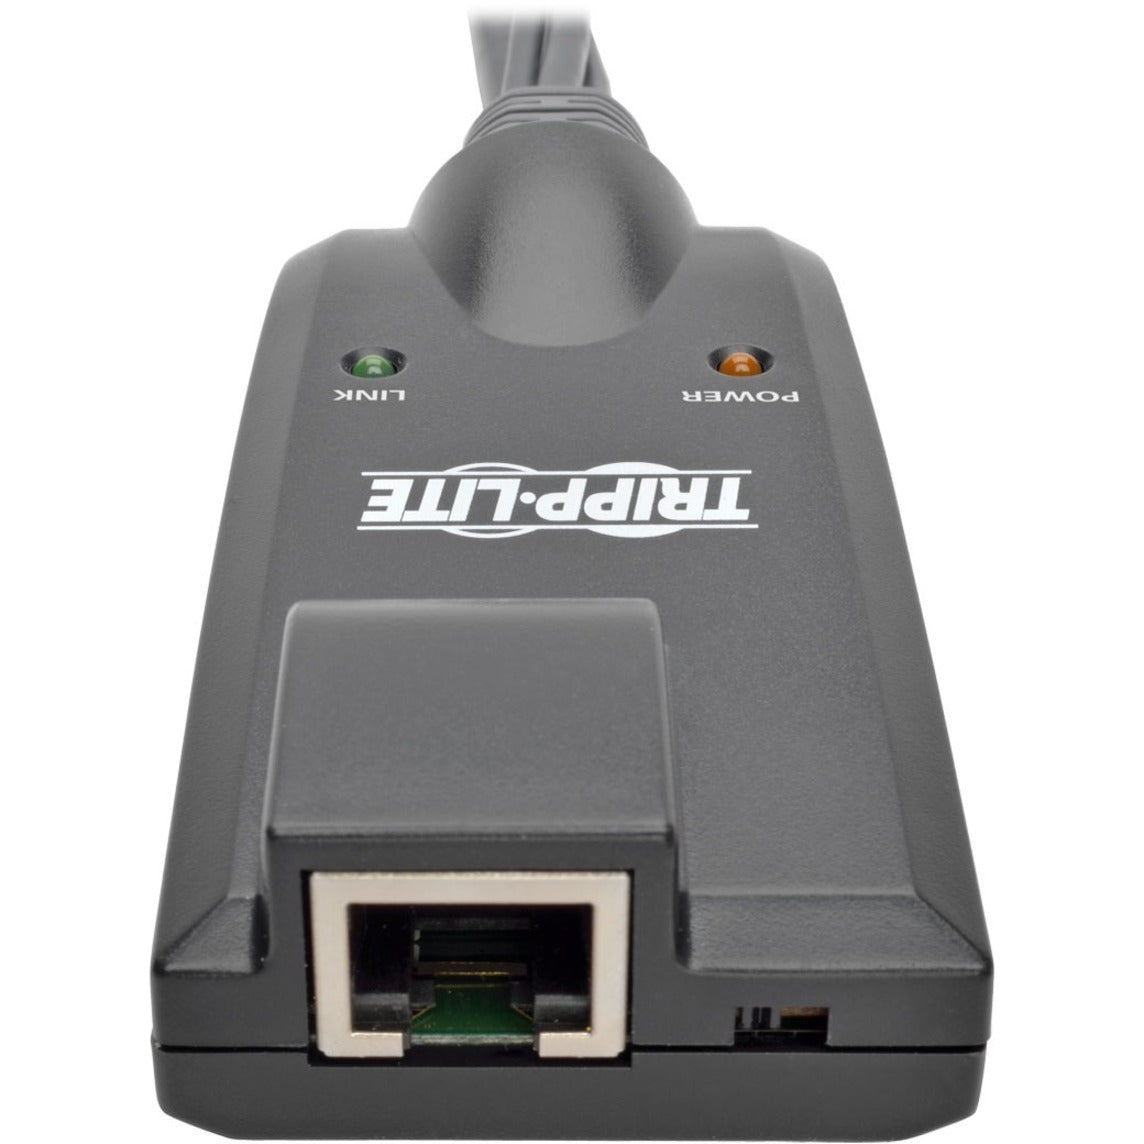 Tripp Lite B055-001-USB-VA NetDirector Interface Serveur USB Unité Extendeur KVM avec USB VGA Casque Microphone et Réseau (RJ-45) Ports